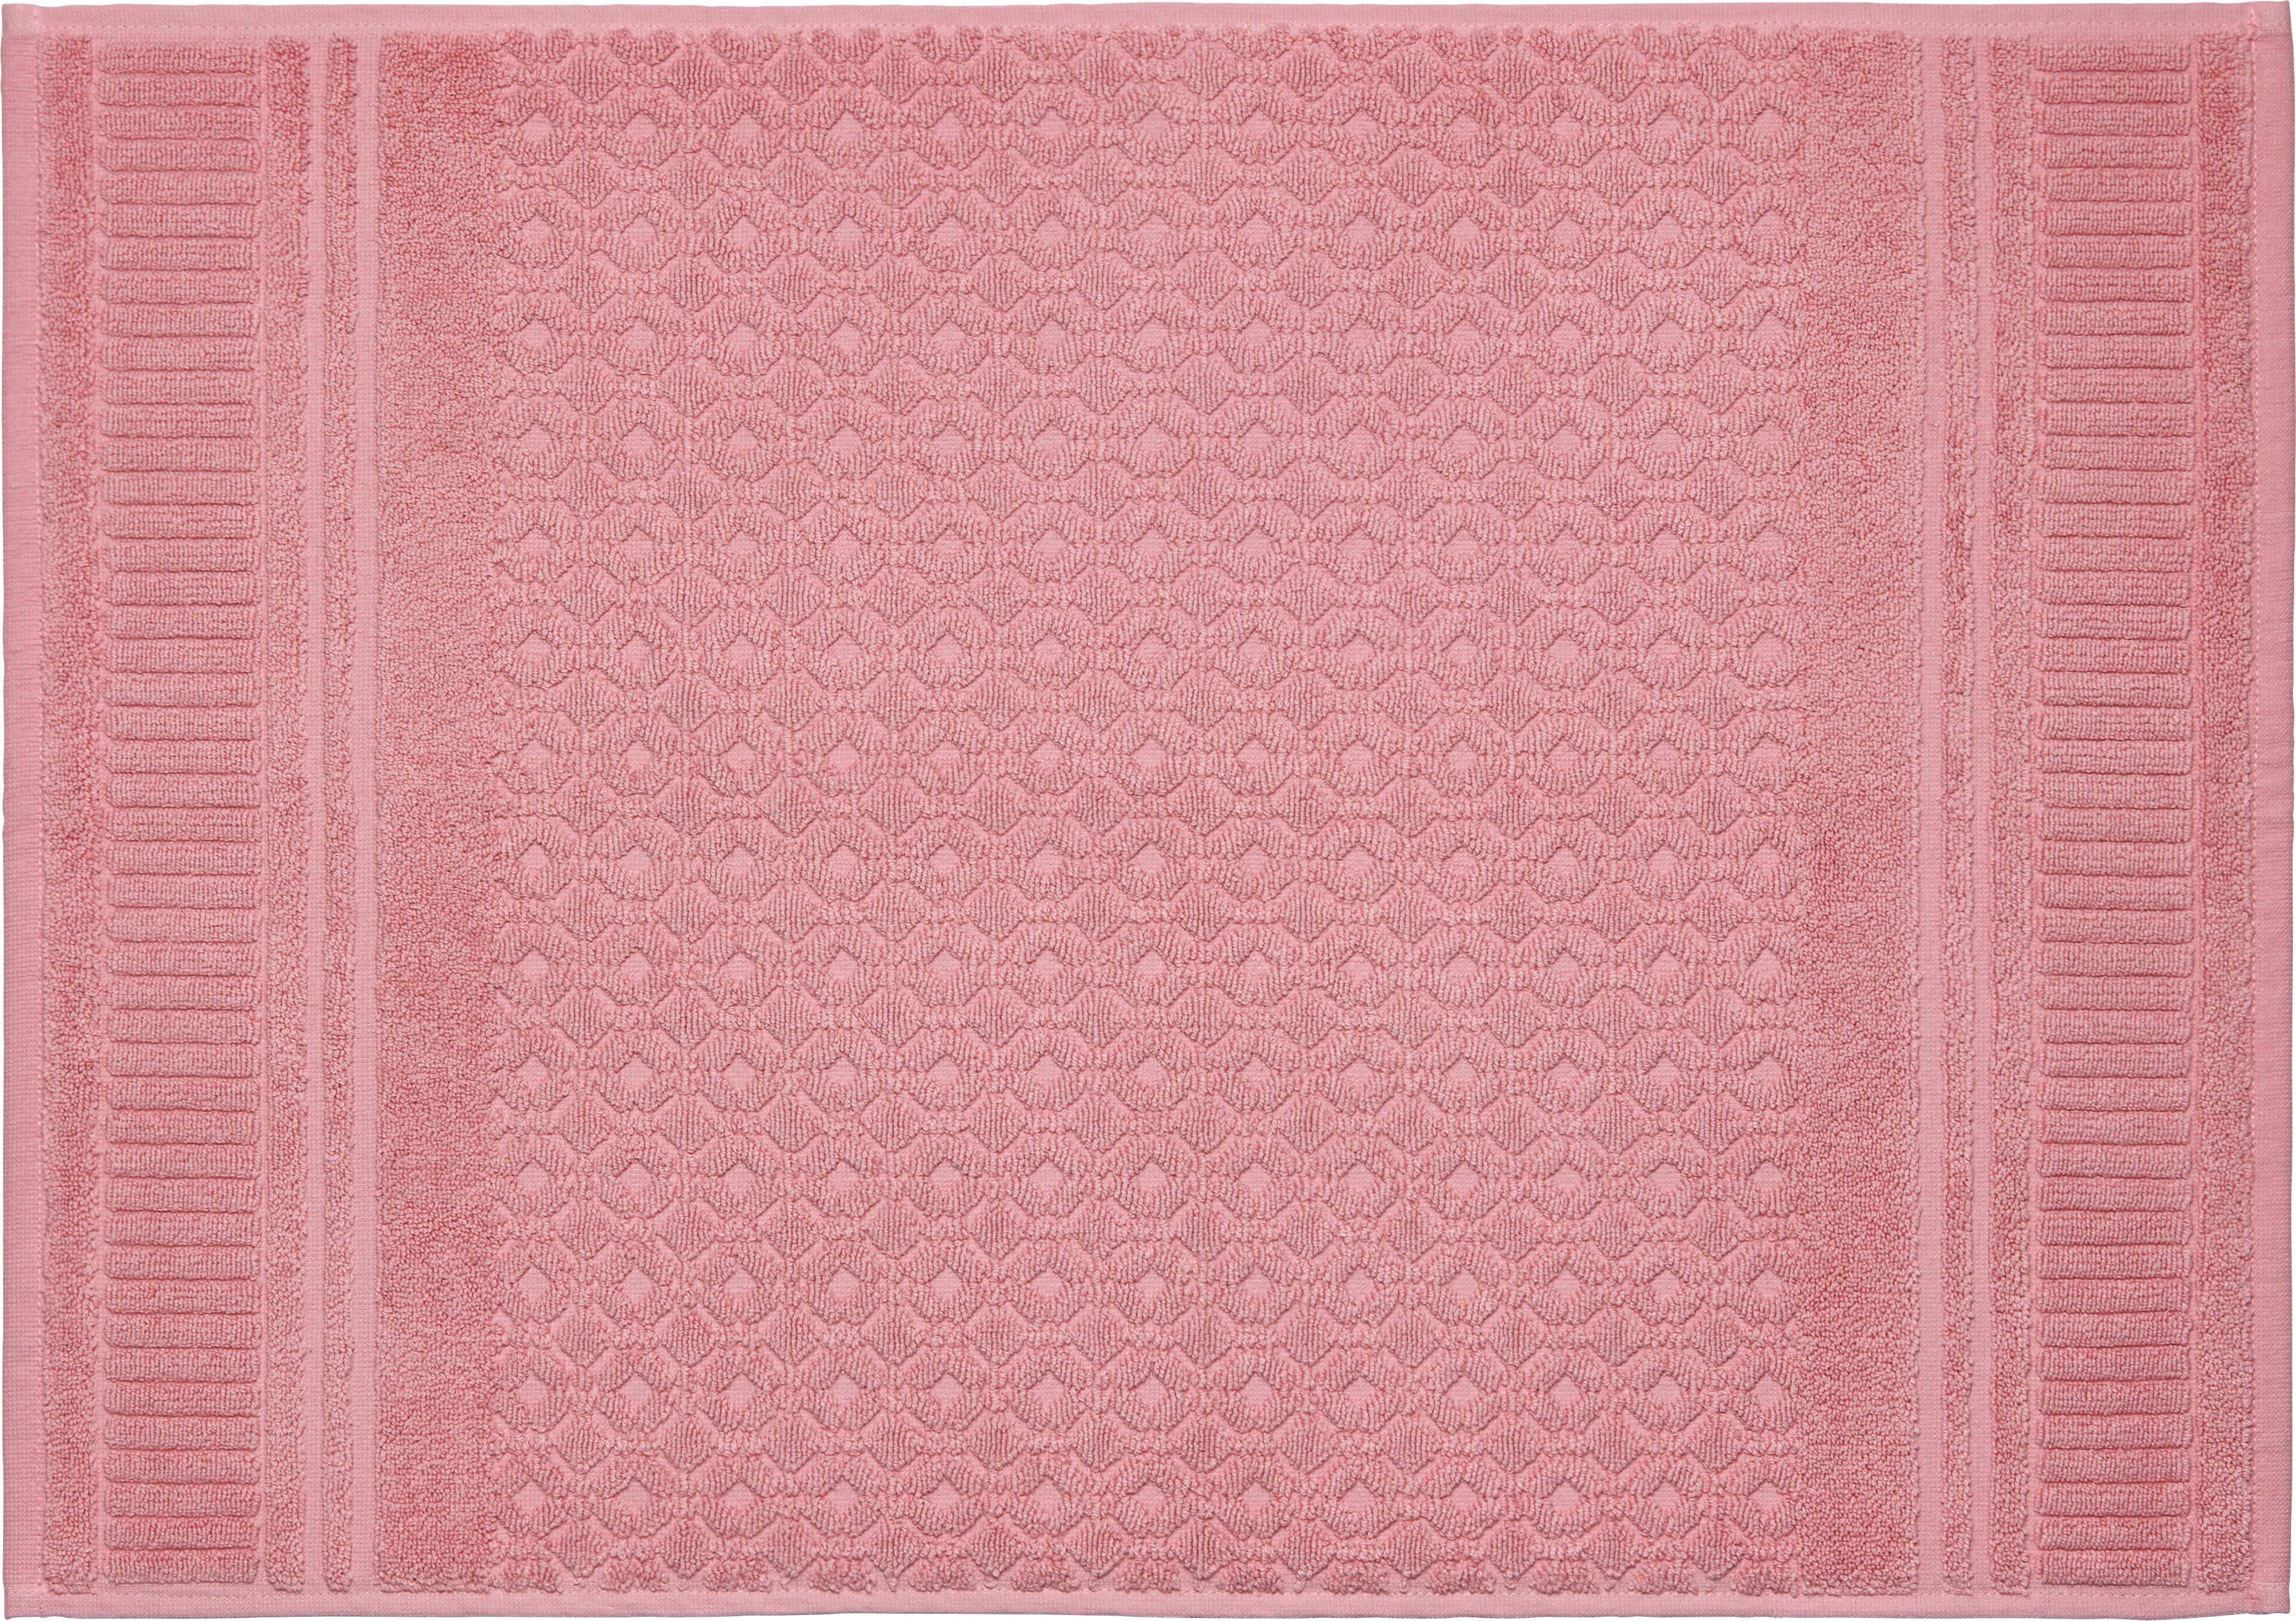 Předložka Koupelnová Carina, 50/70cm, Růžová - růžová, Romantický / Rustikální, textil (50/70cm) - Modern Living